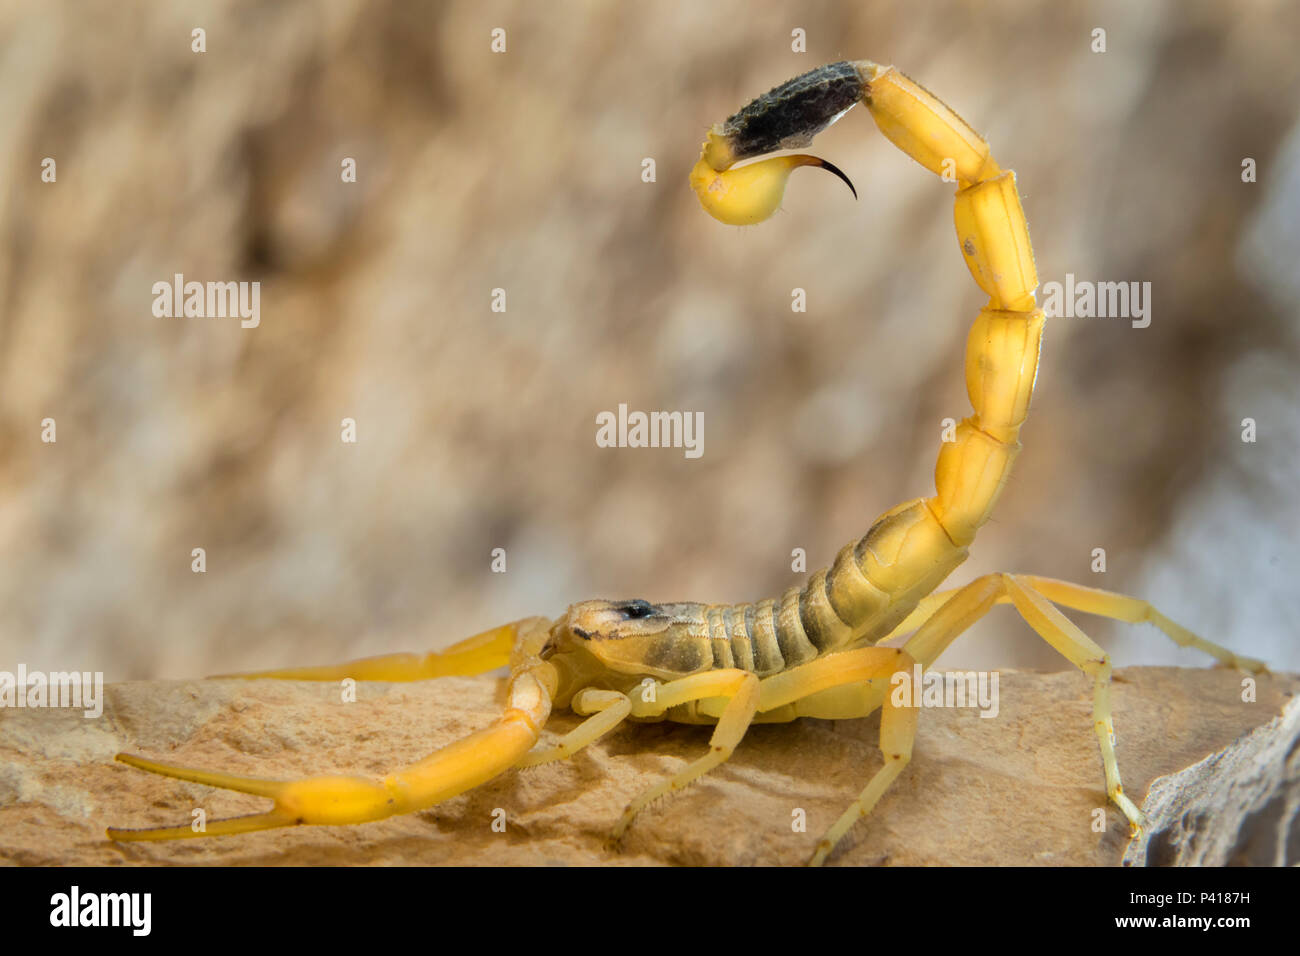 Deathstalker scorpion, or Israeli yellow scorpion (Leiurus quinquestriatus) in defensive posture, Negev Desert, Israel. Stock Photo